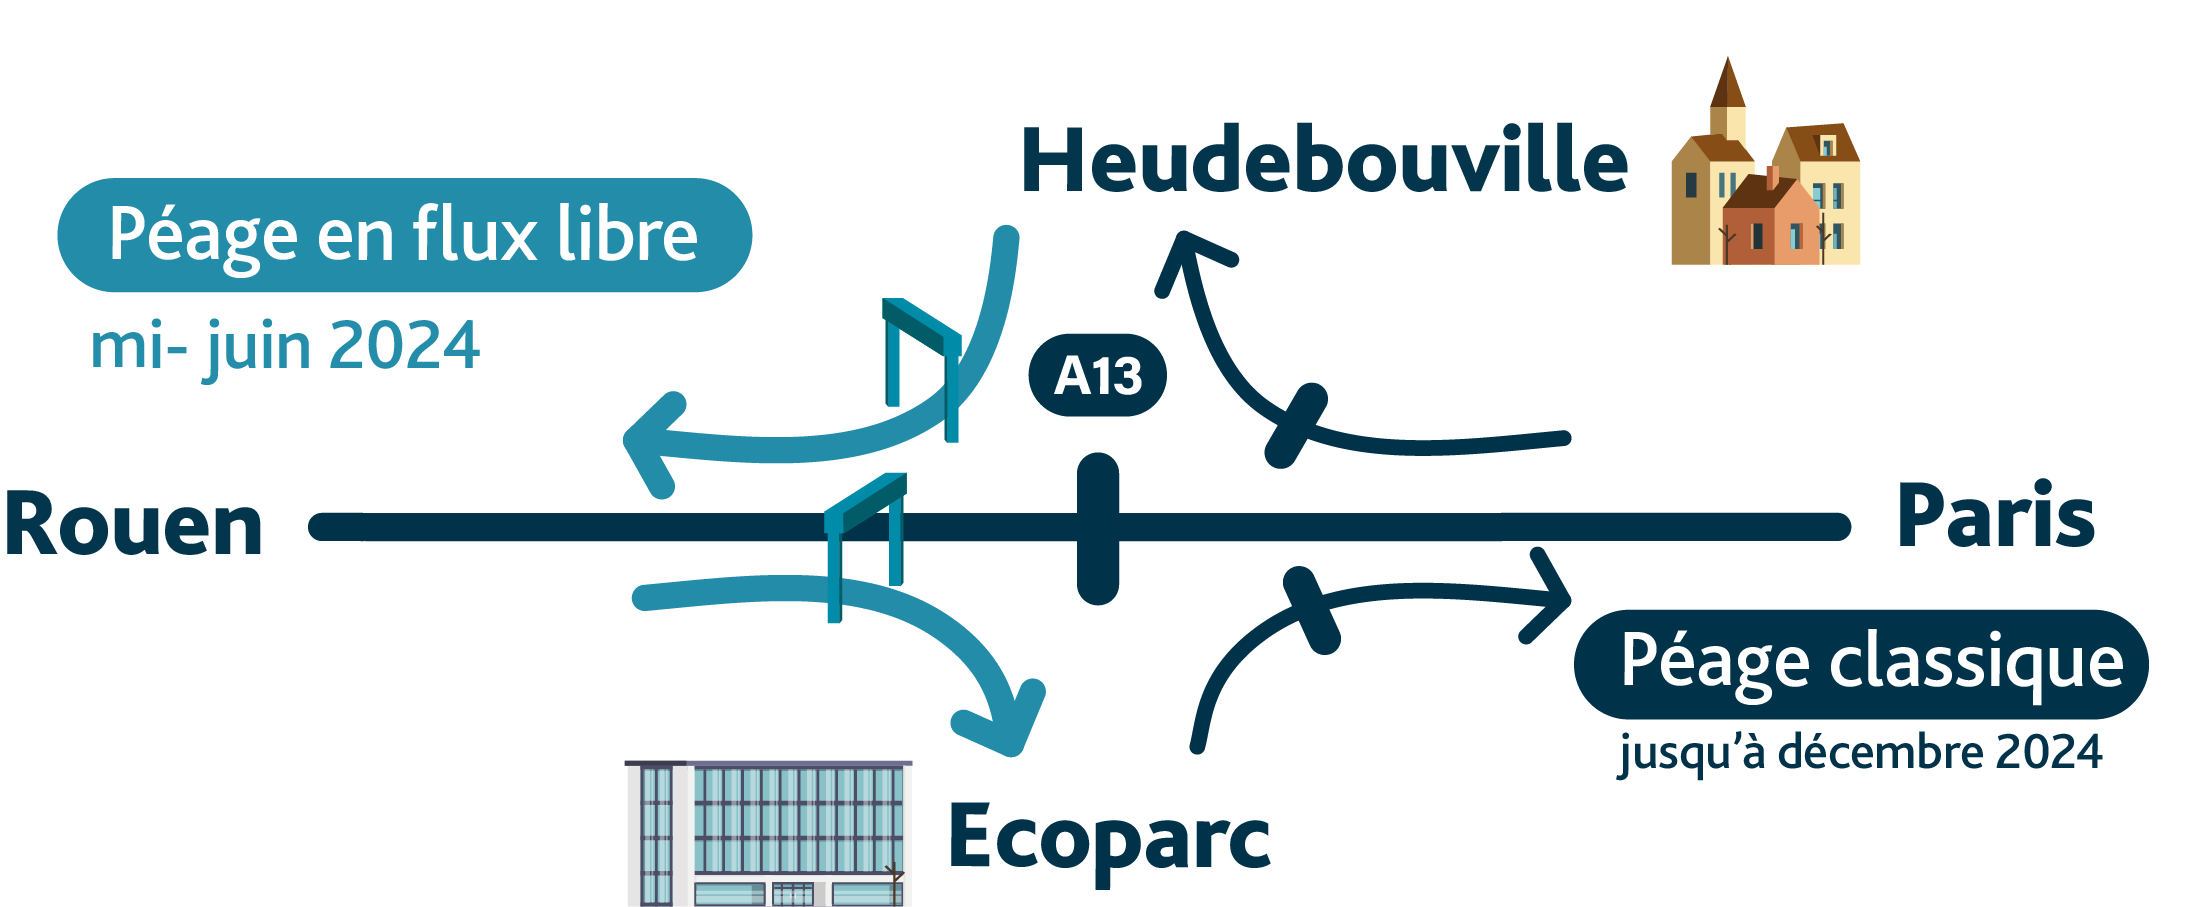 Heudebouville-FluxLibre-Nouveaux-Accès-Bretelles-A13